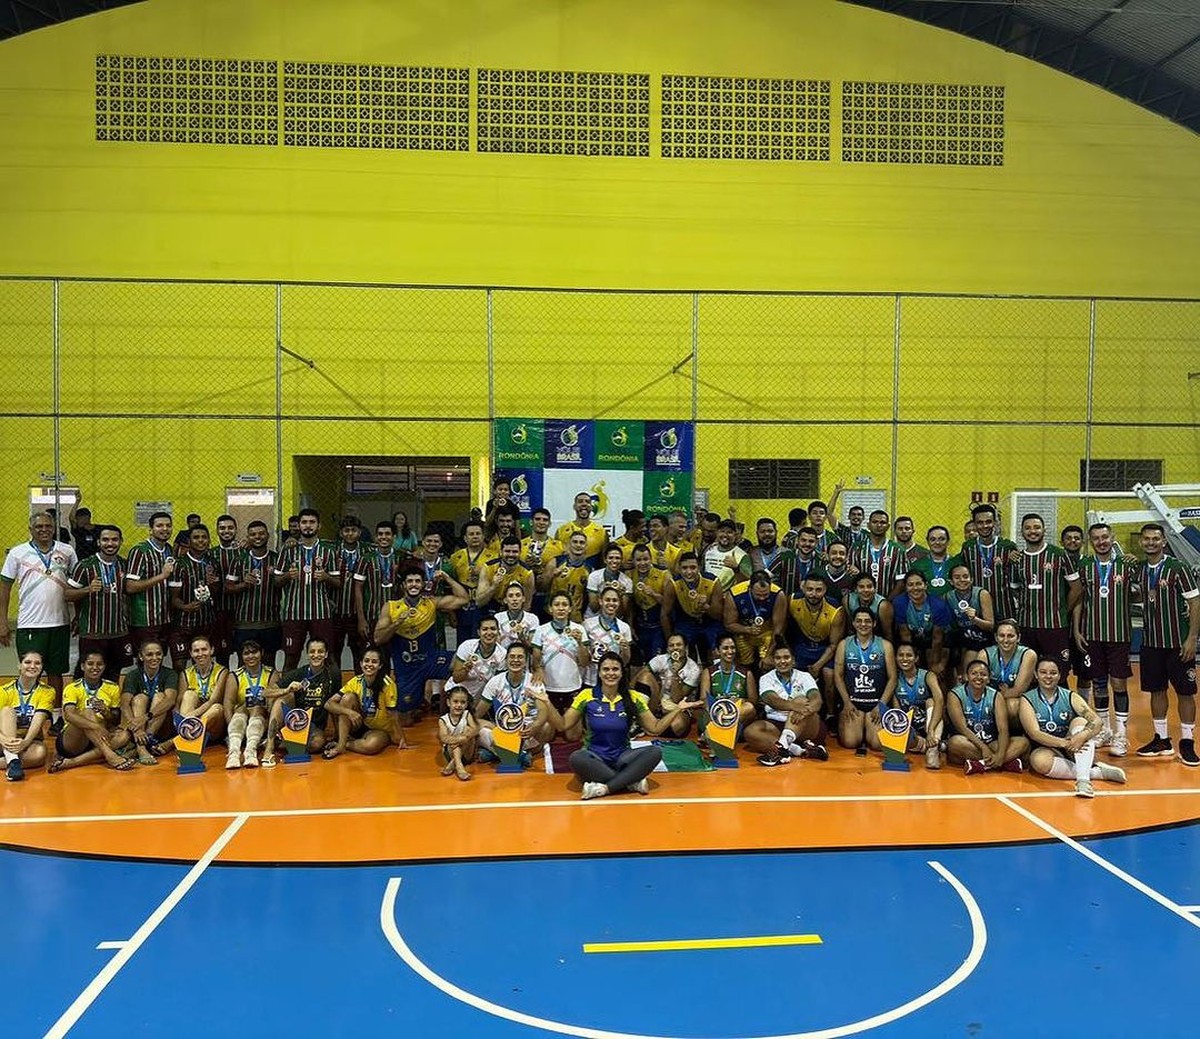 Porto Velho Miners joga em casa pela 1ª vez em competição da liga  Brasileira de Futebol Americano, ro